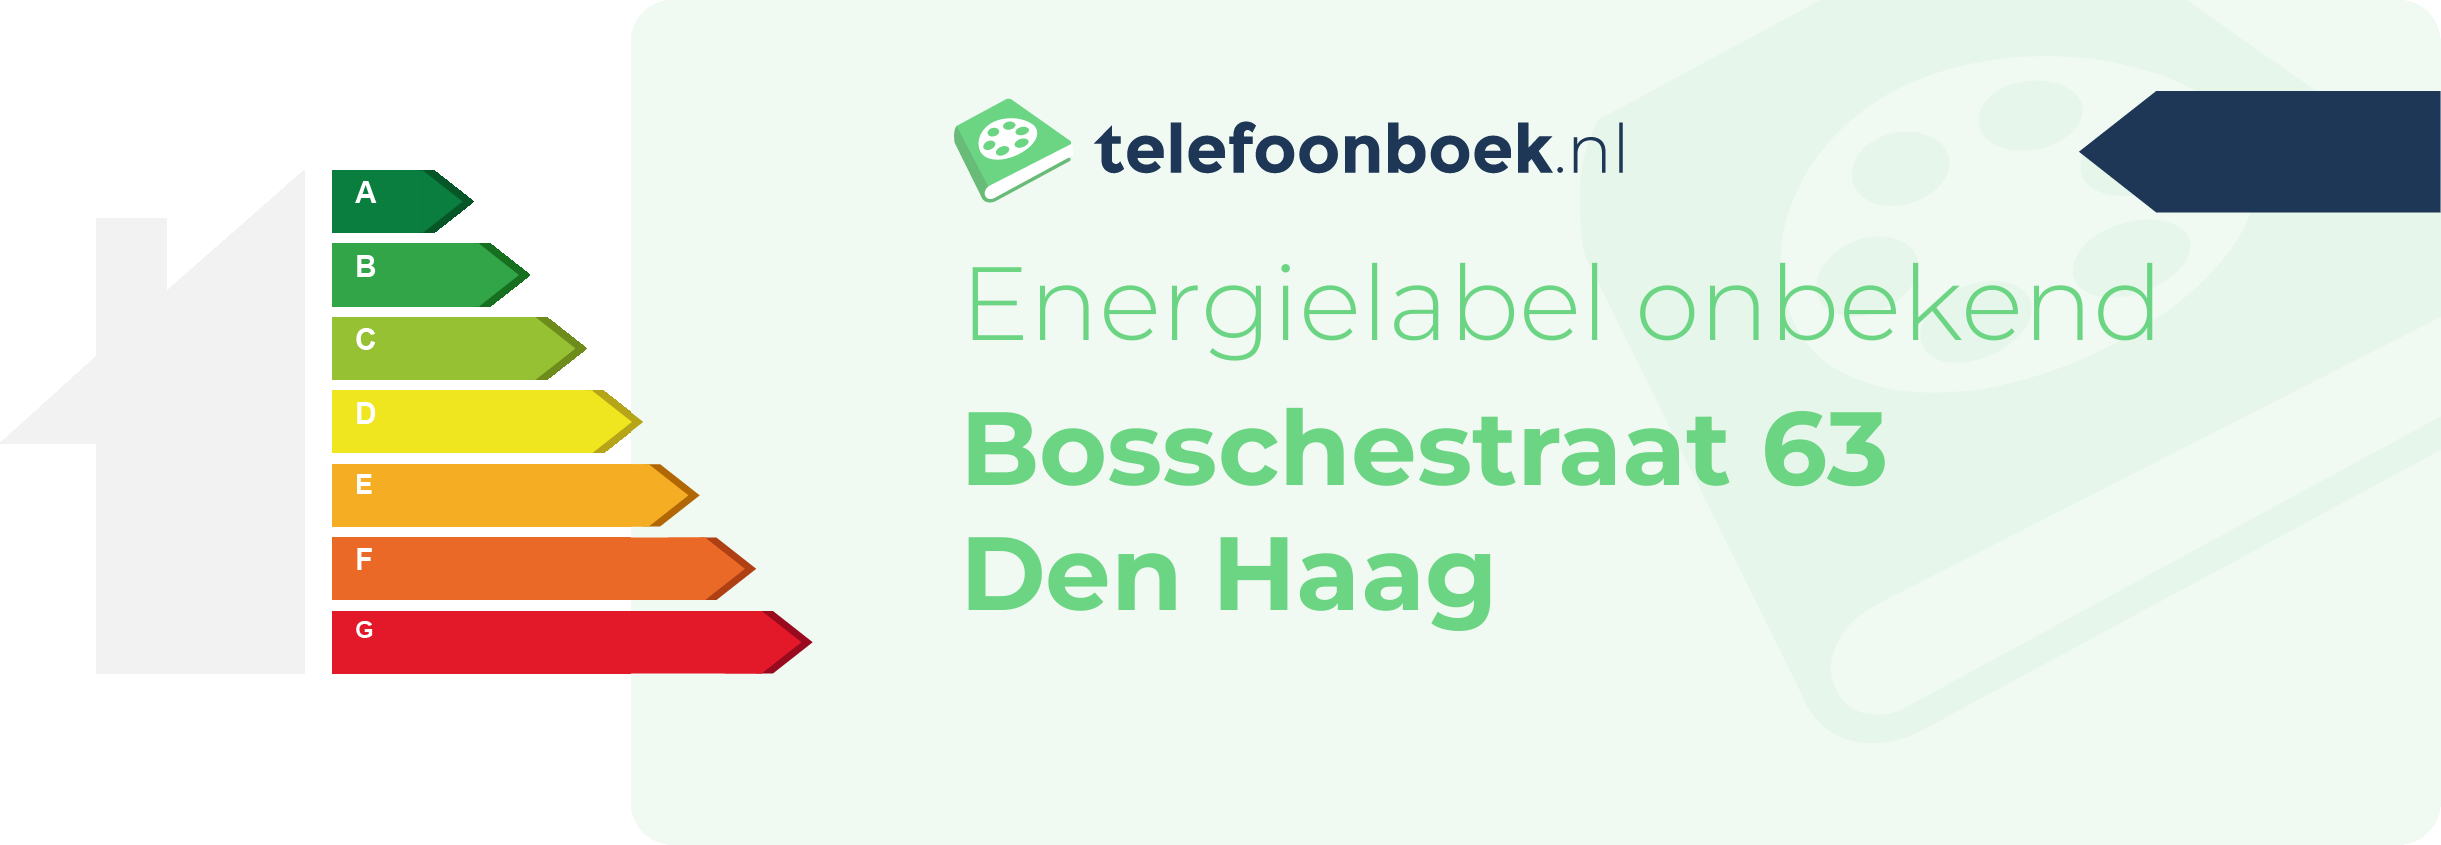 Energielabel Bosschestraat 63 Den Haag